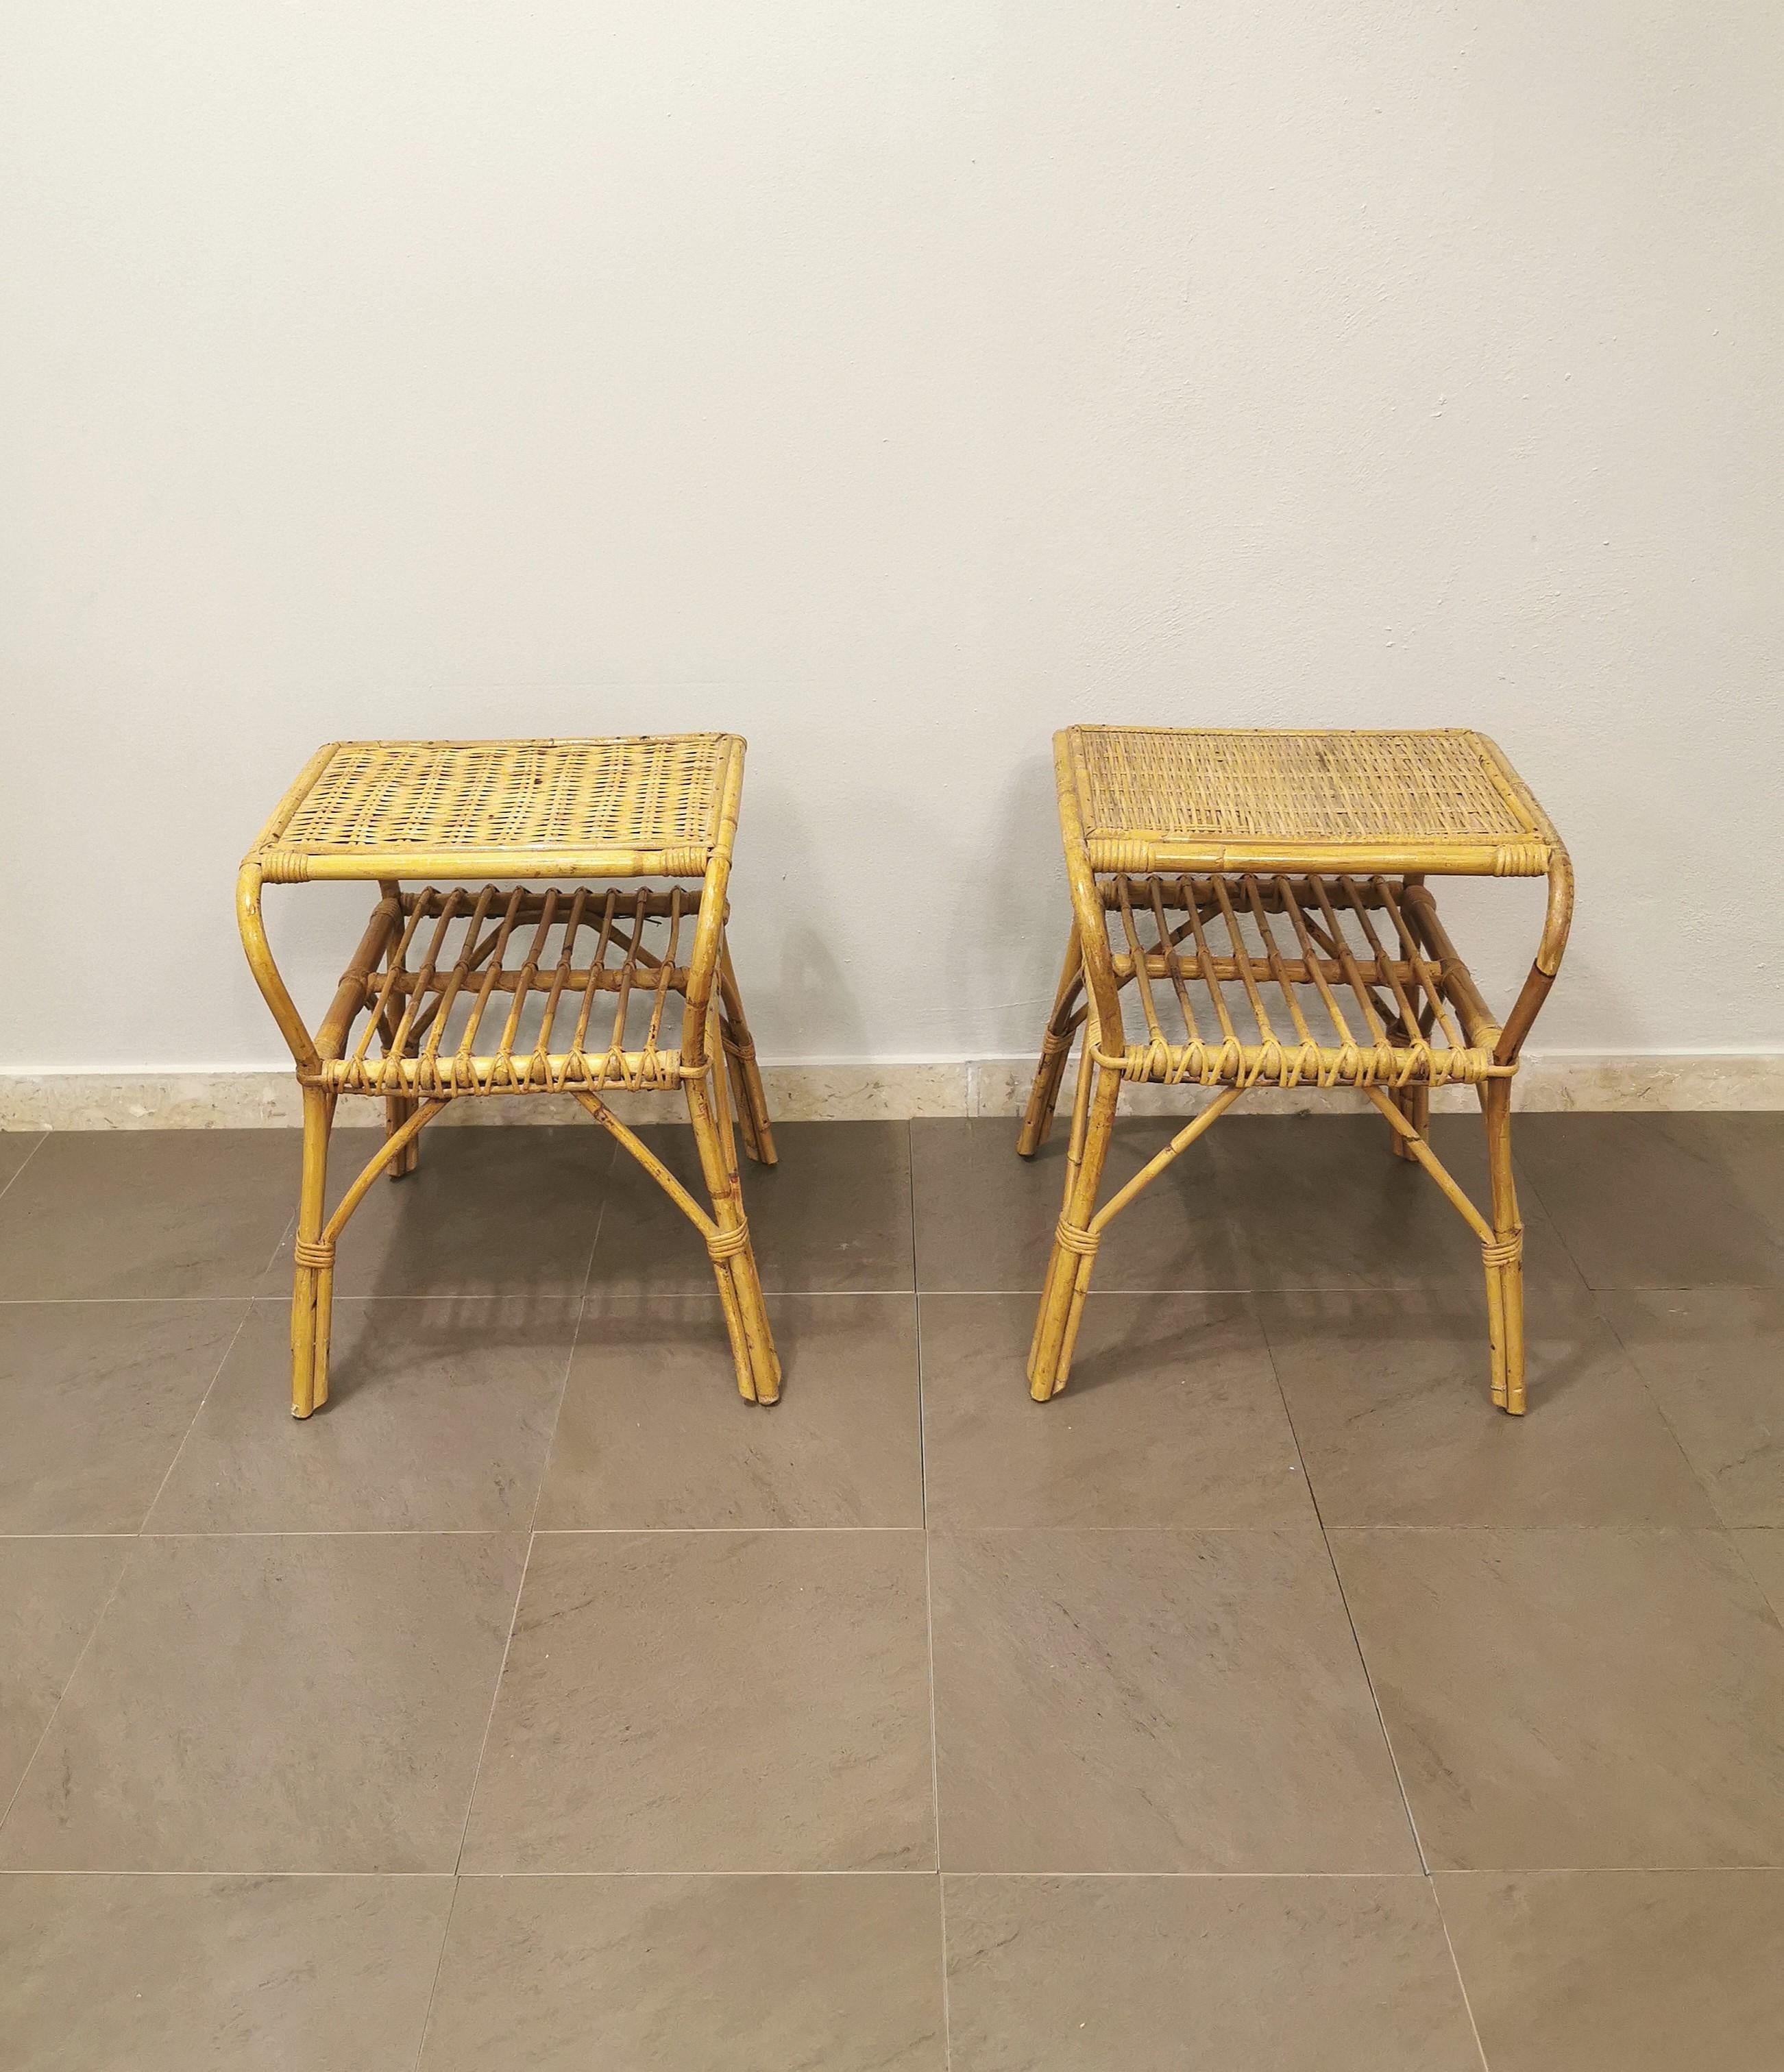 Midcentury Bedside Tables Nightstands Bamboo Rattan Italian Design 1960 Set of 2 2